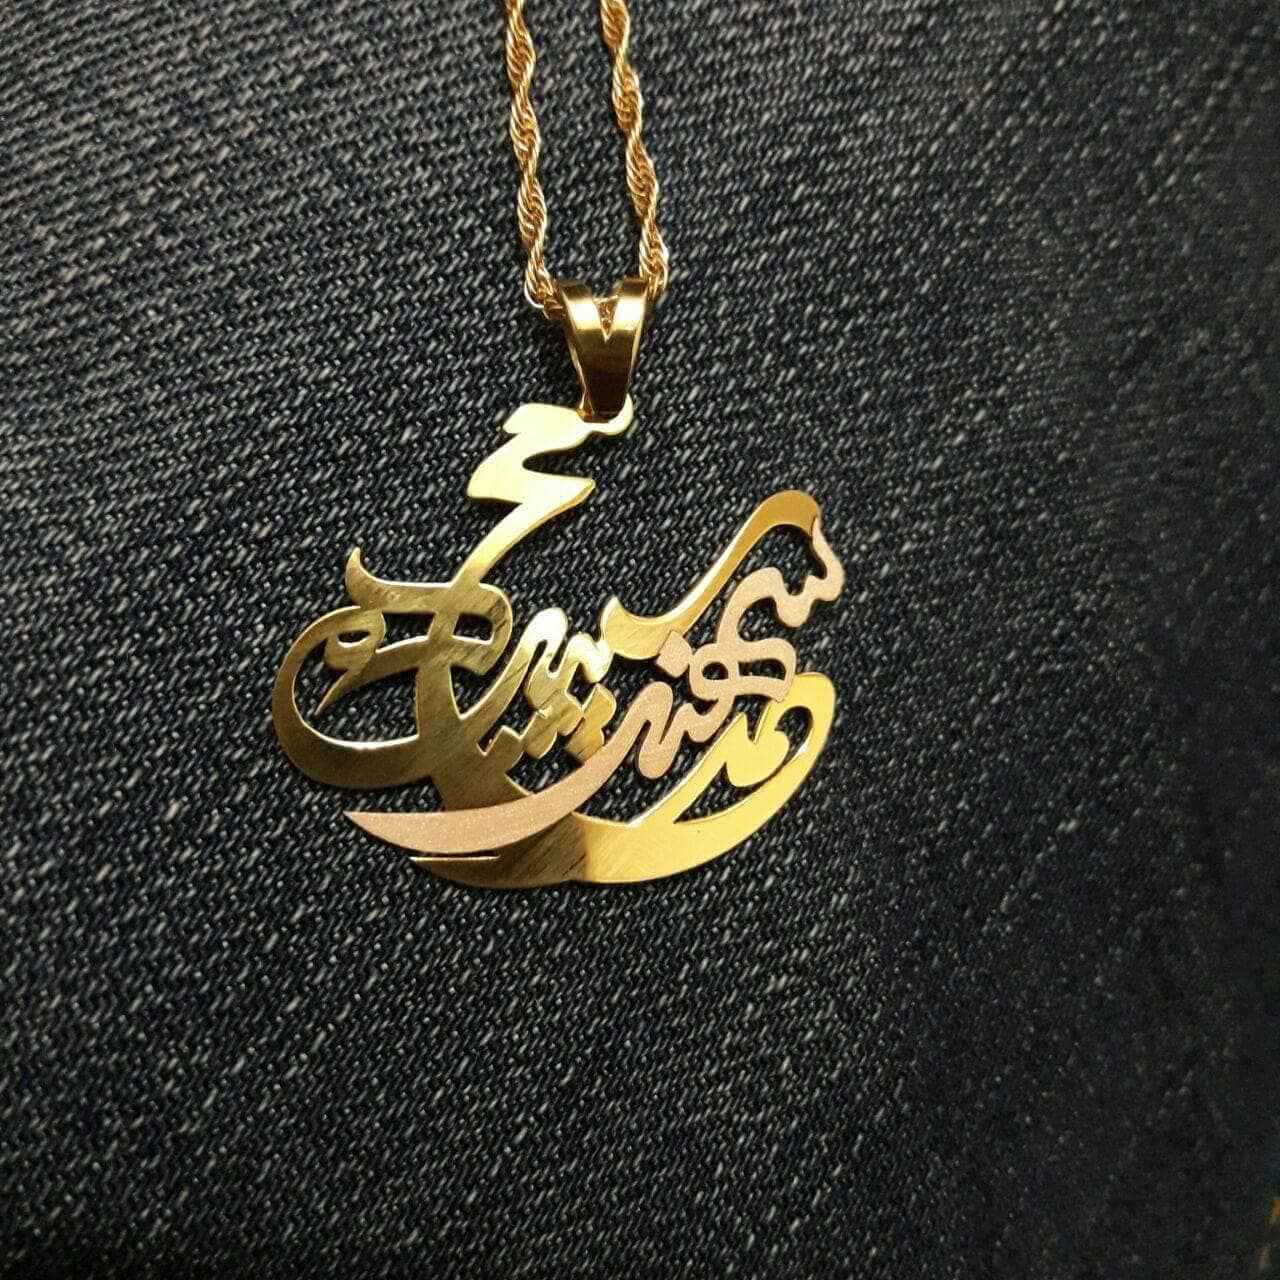 گردنبند طلا با سه اسم "سهند، سپیده و محمد"